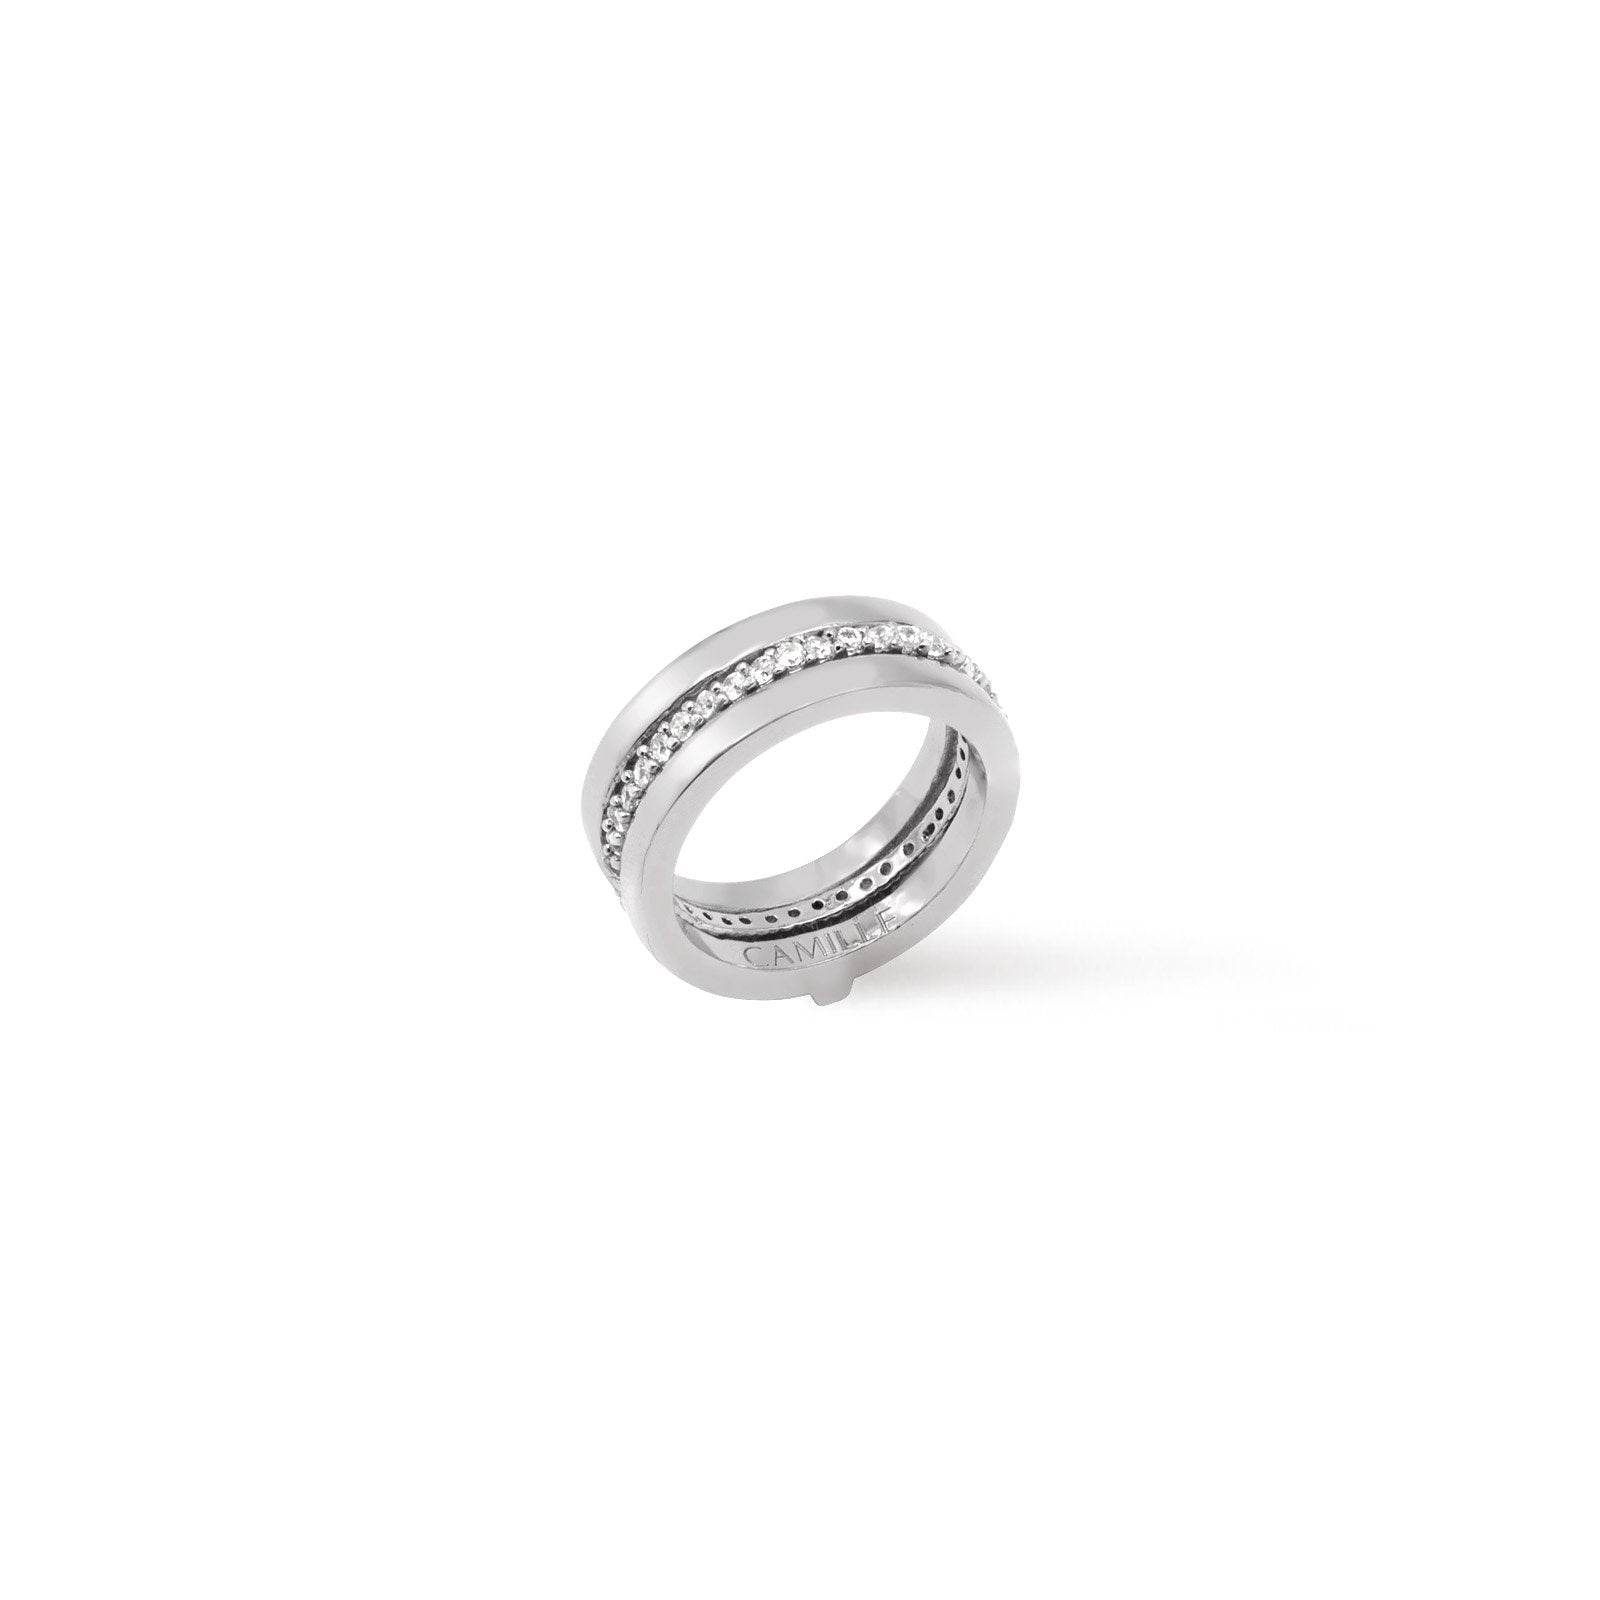 Thyra - Insert Ring - Camille Jewelry